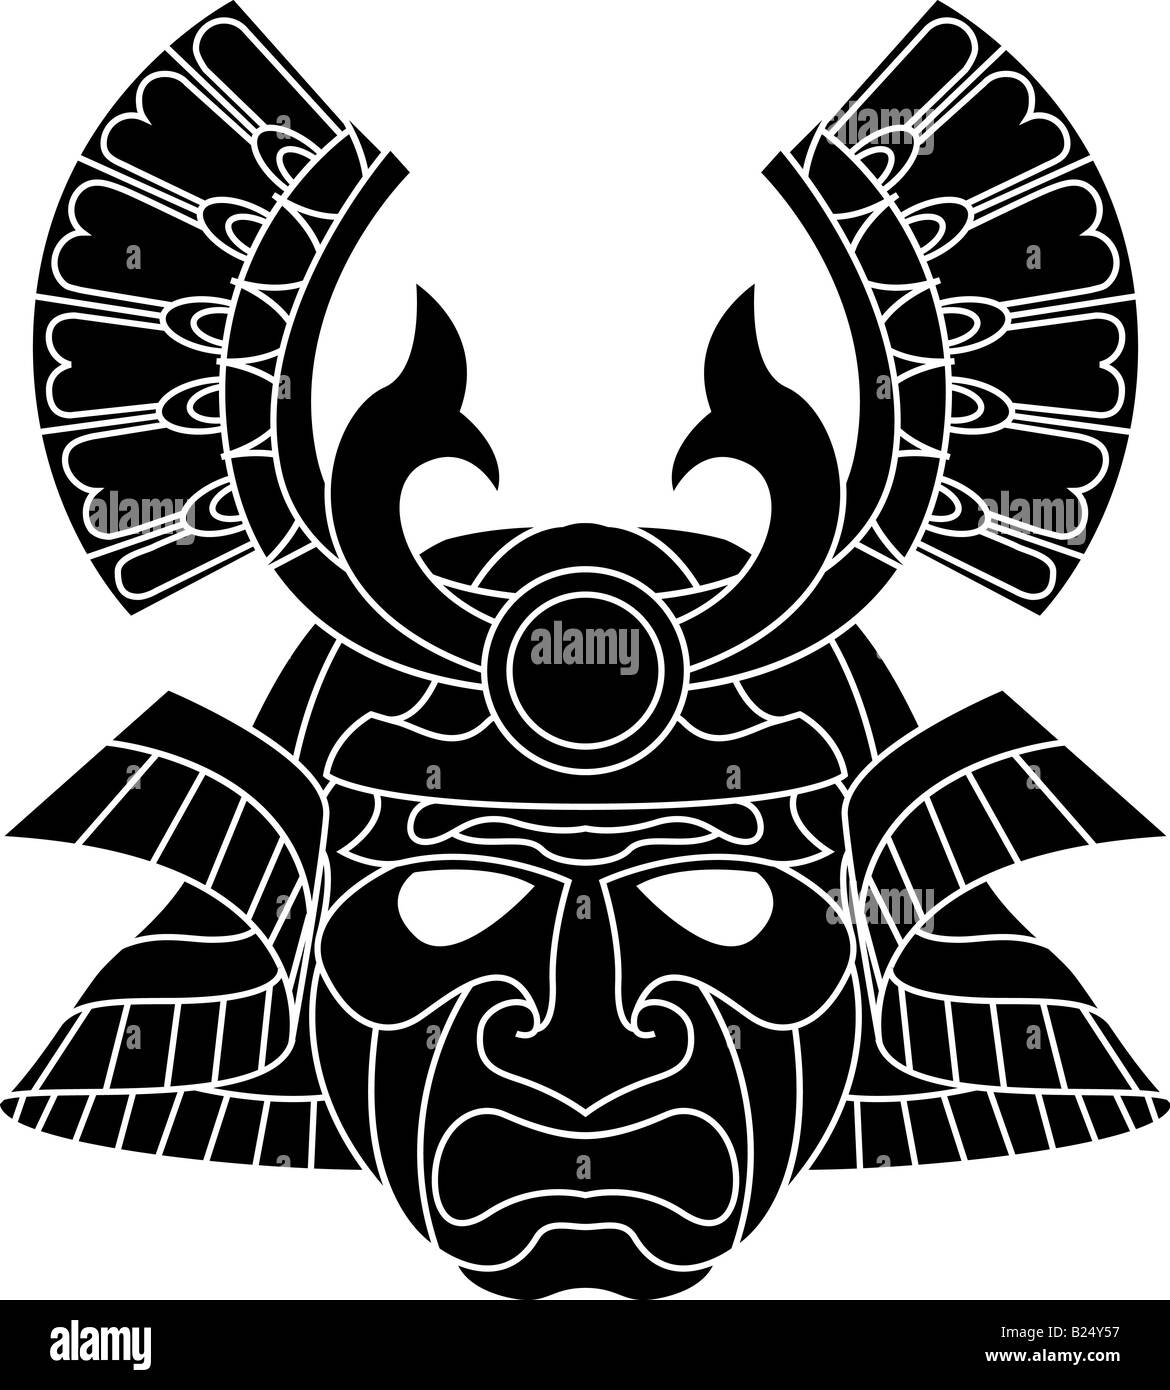 Une illustration d'un masque de samouraï monochrome redoutable Banque D'Images